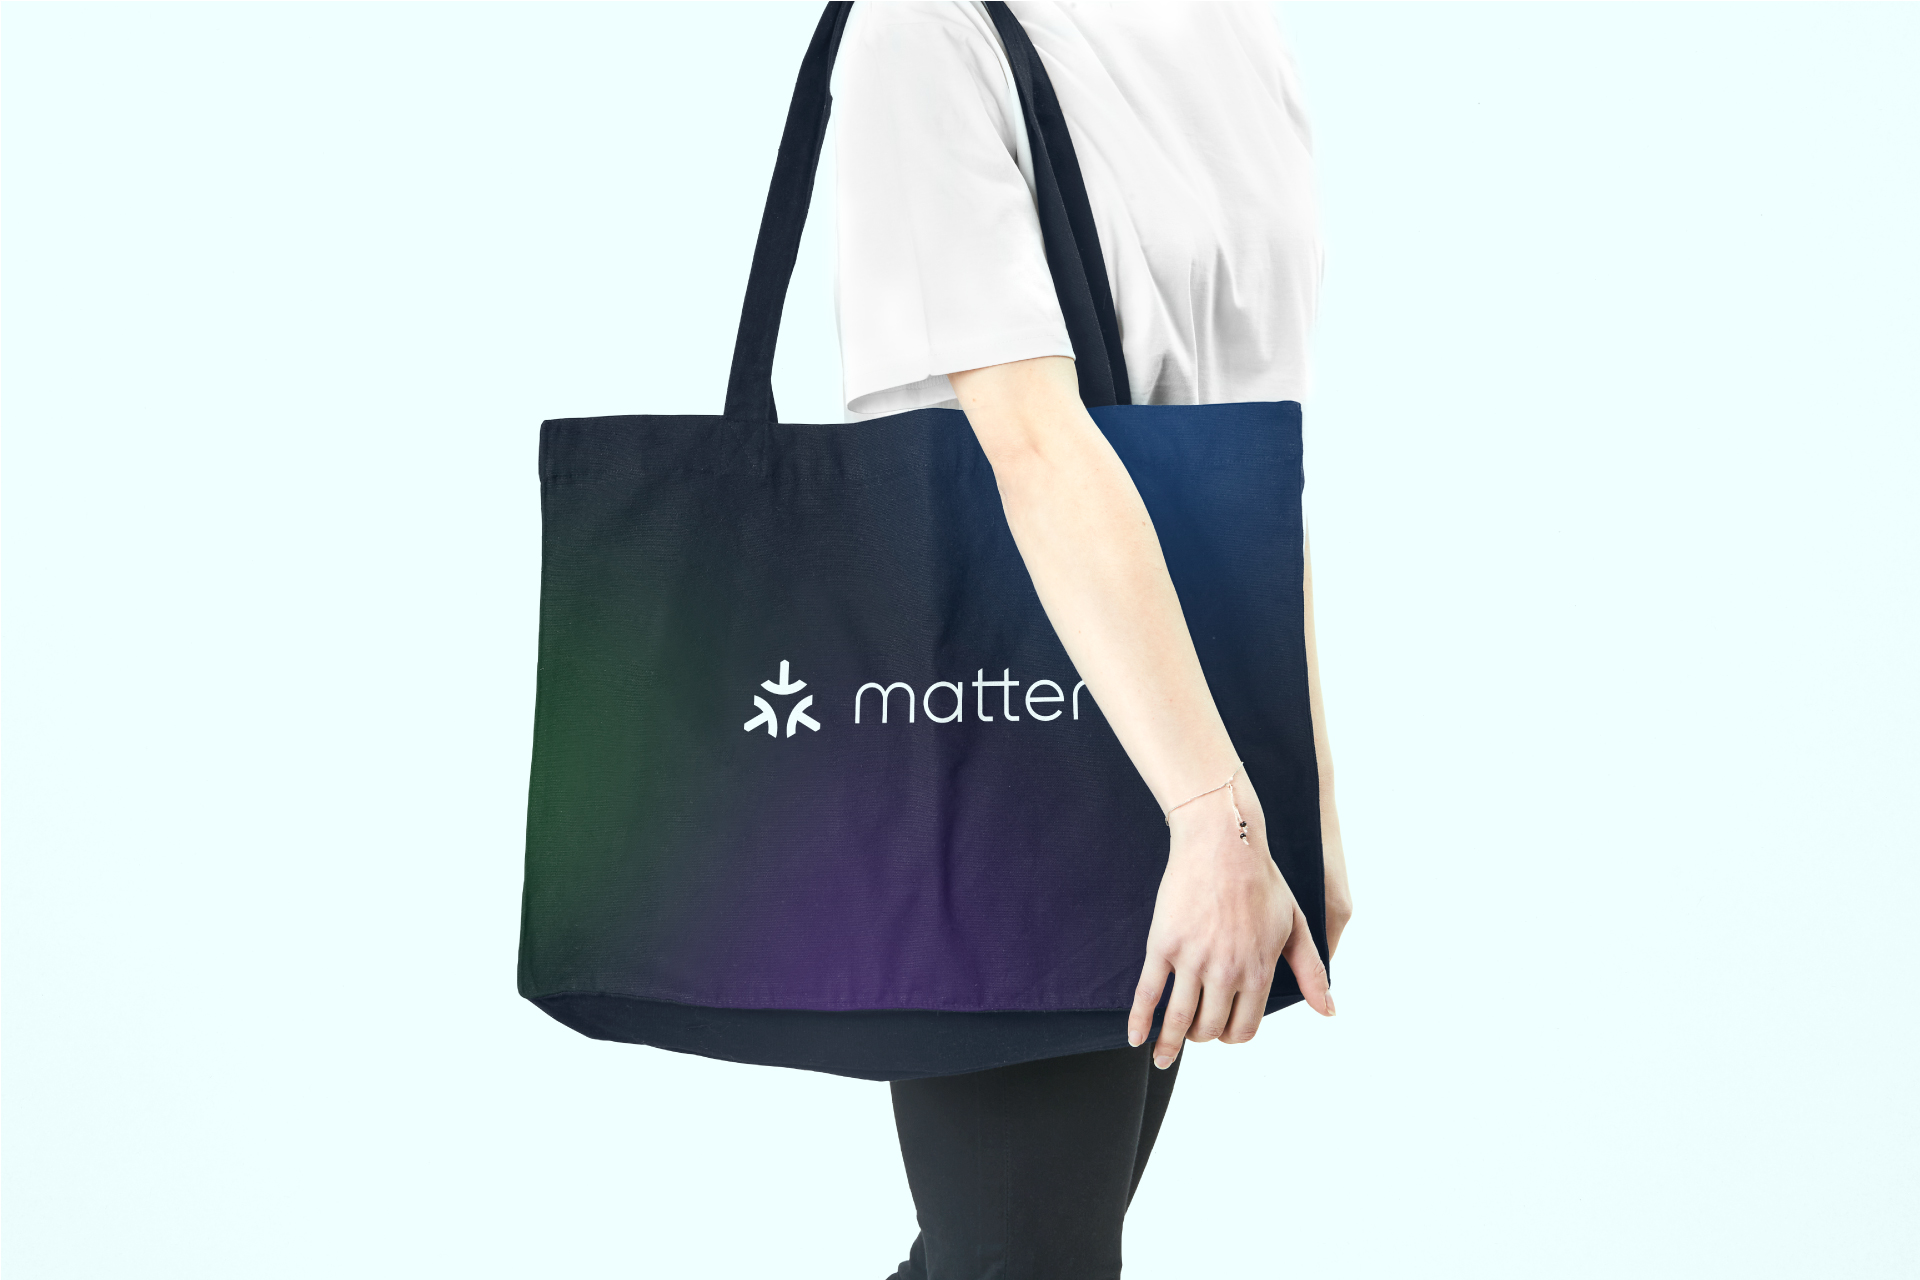 Matter branded tote bag 